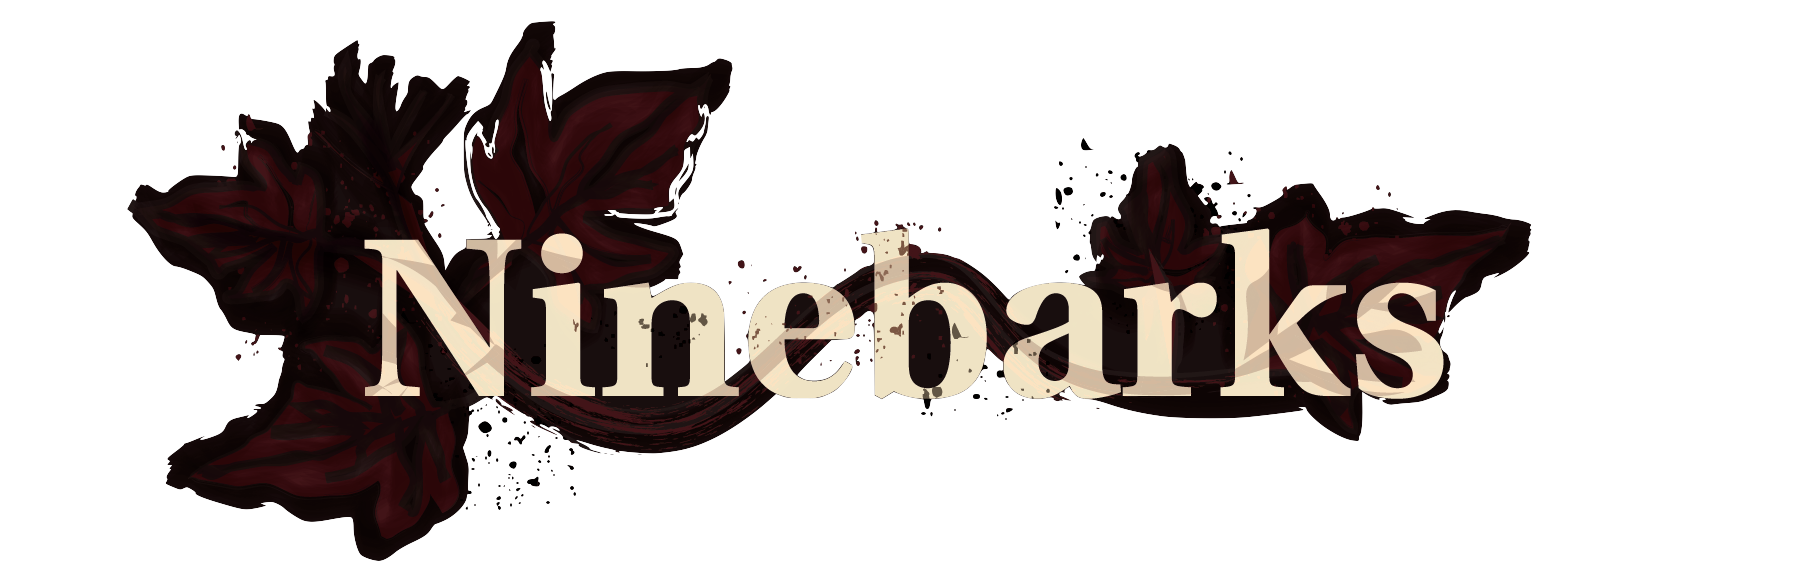 Ninebarks band logo